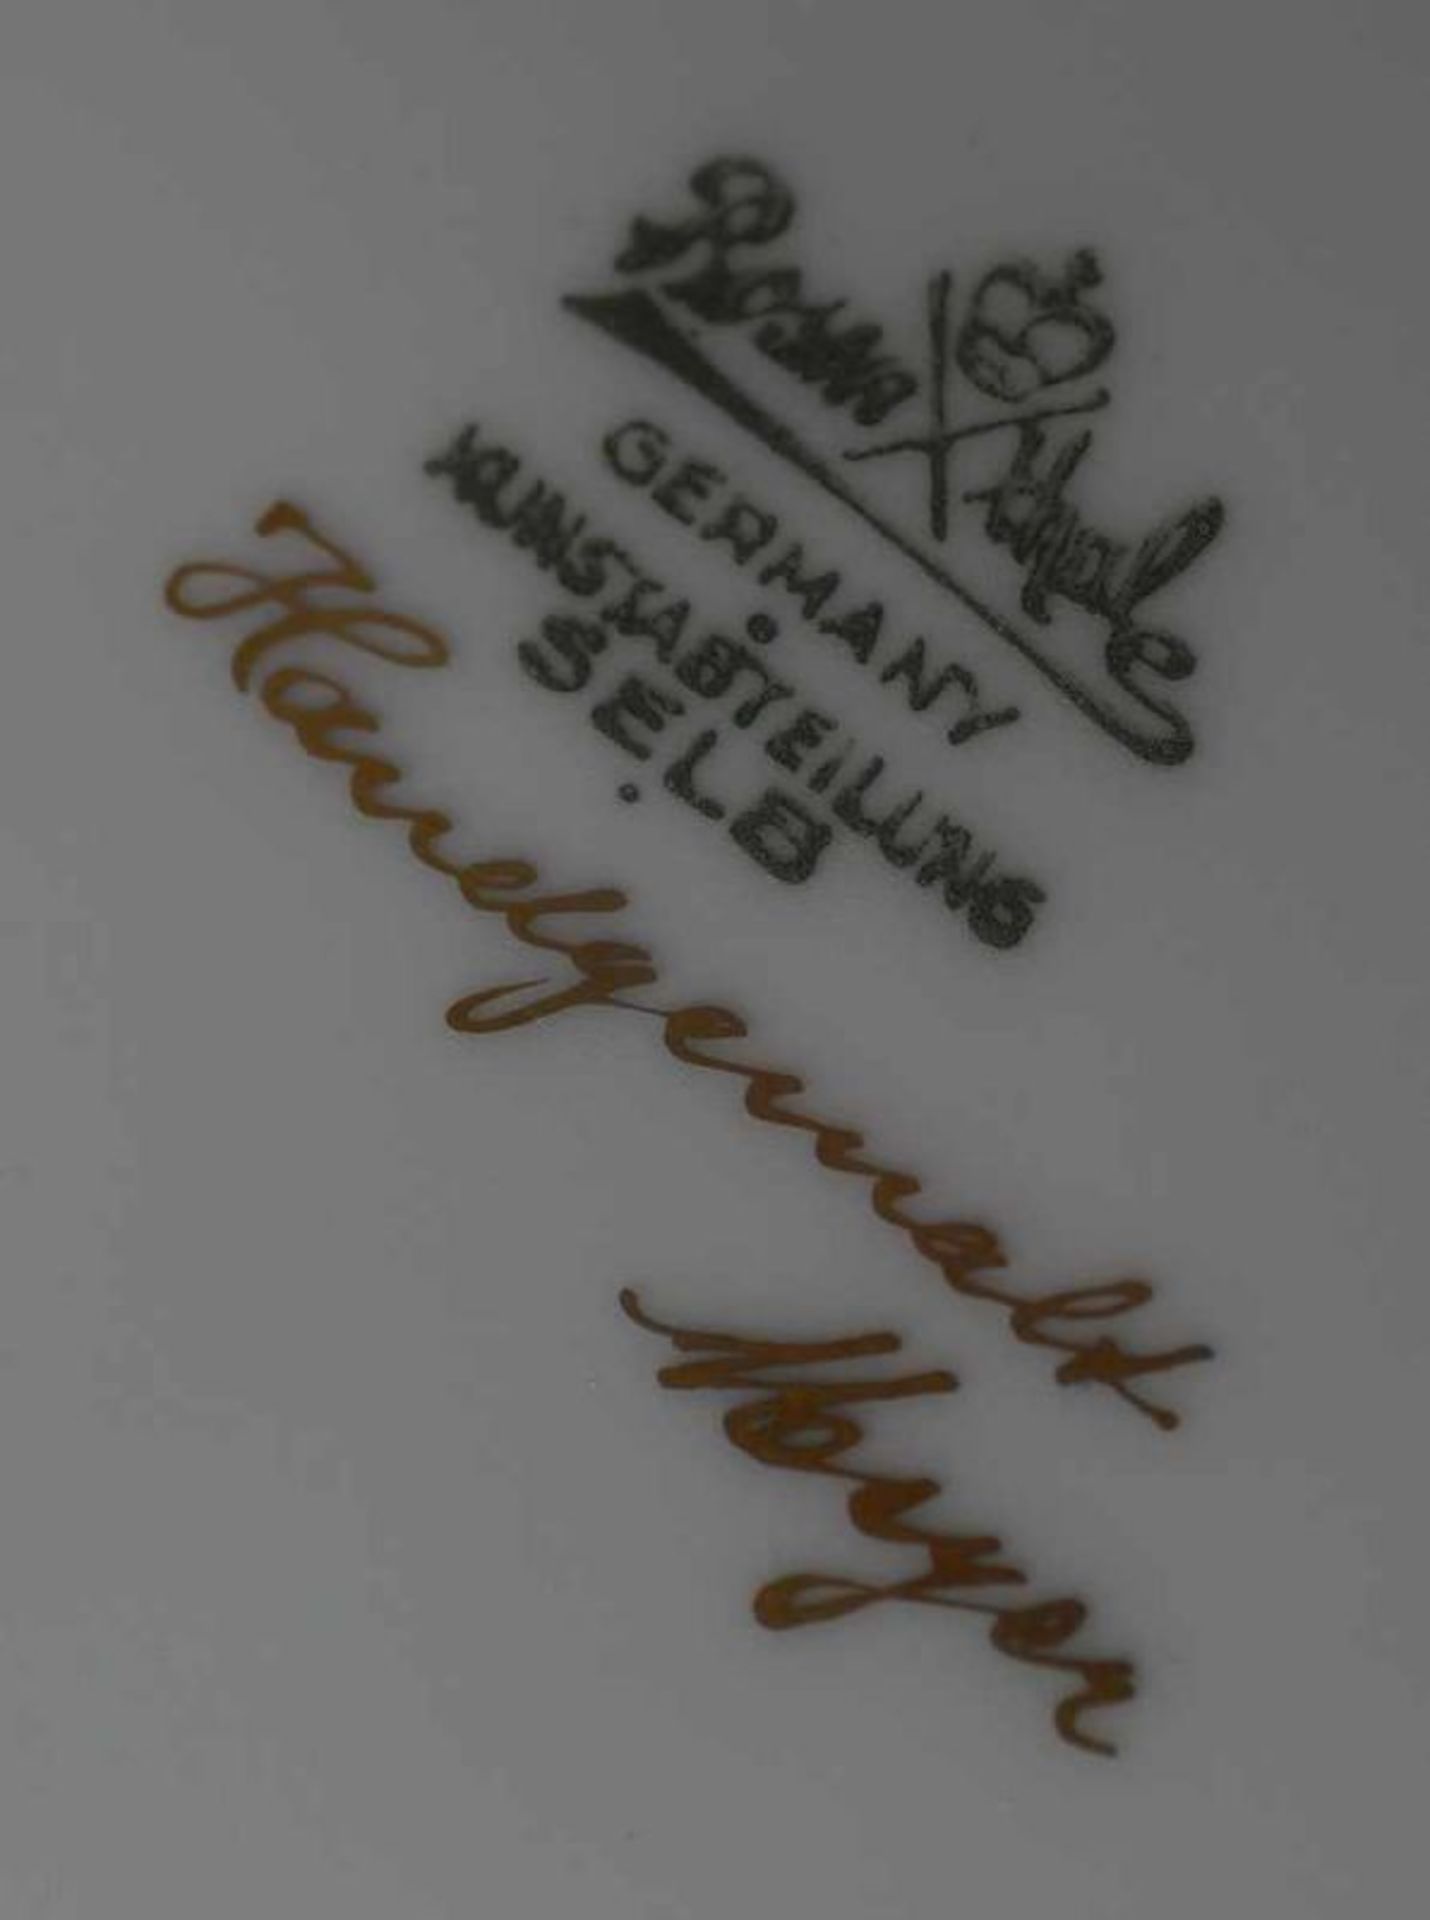 Grosse Rosenthal Deckelamphore, weisser Scherben, bunt bemalt, gemarktet, H 51 cm 20.17 % buyer's - Bild 6 aus 6